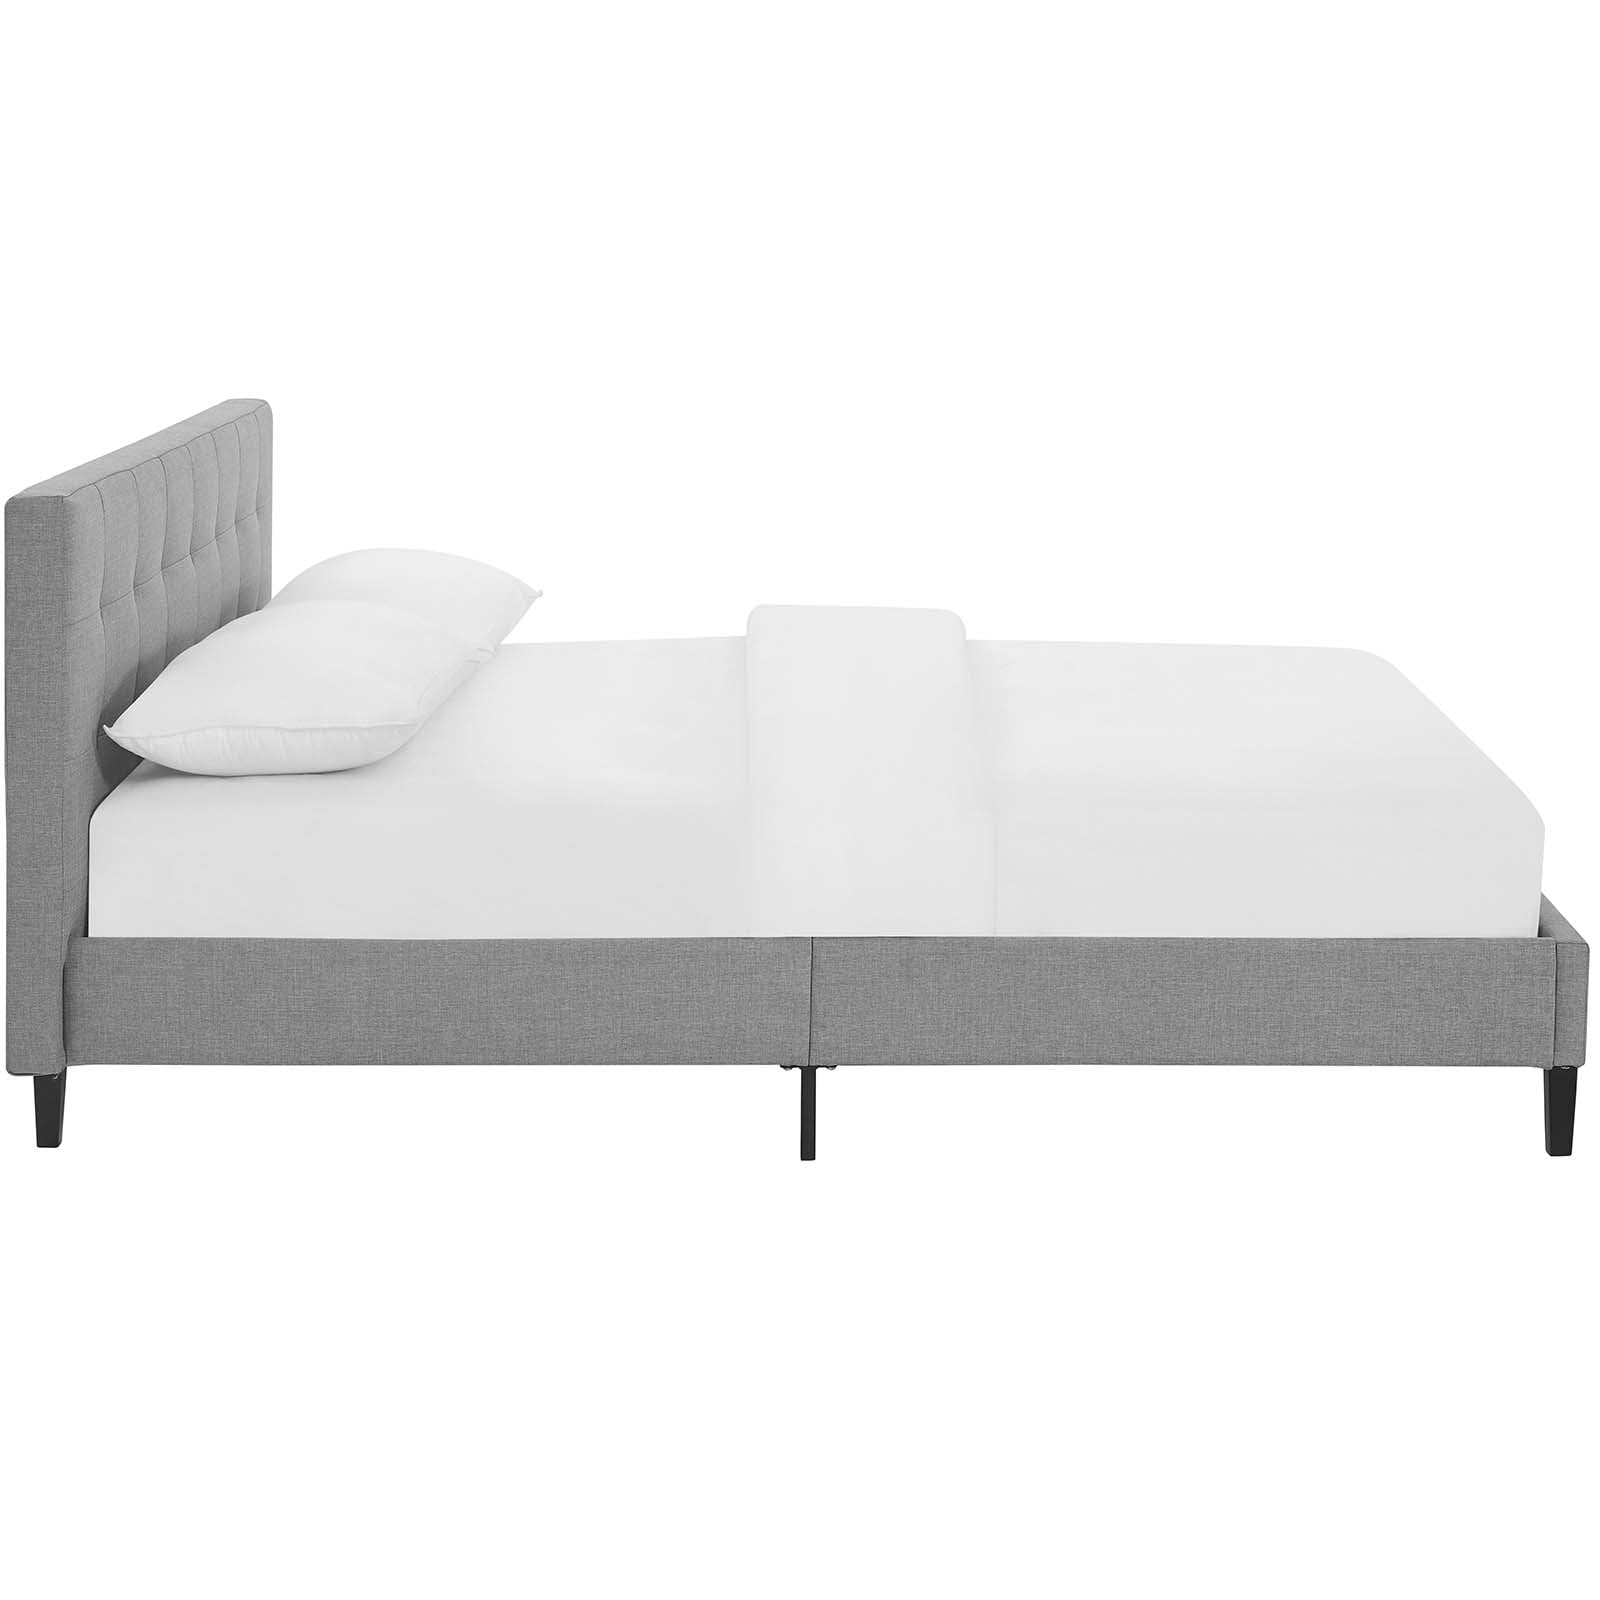 Modway Beds - Linnea Full Bed Light Gray